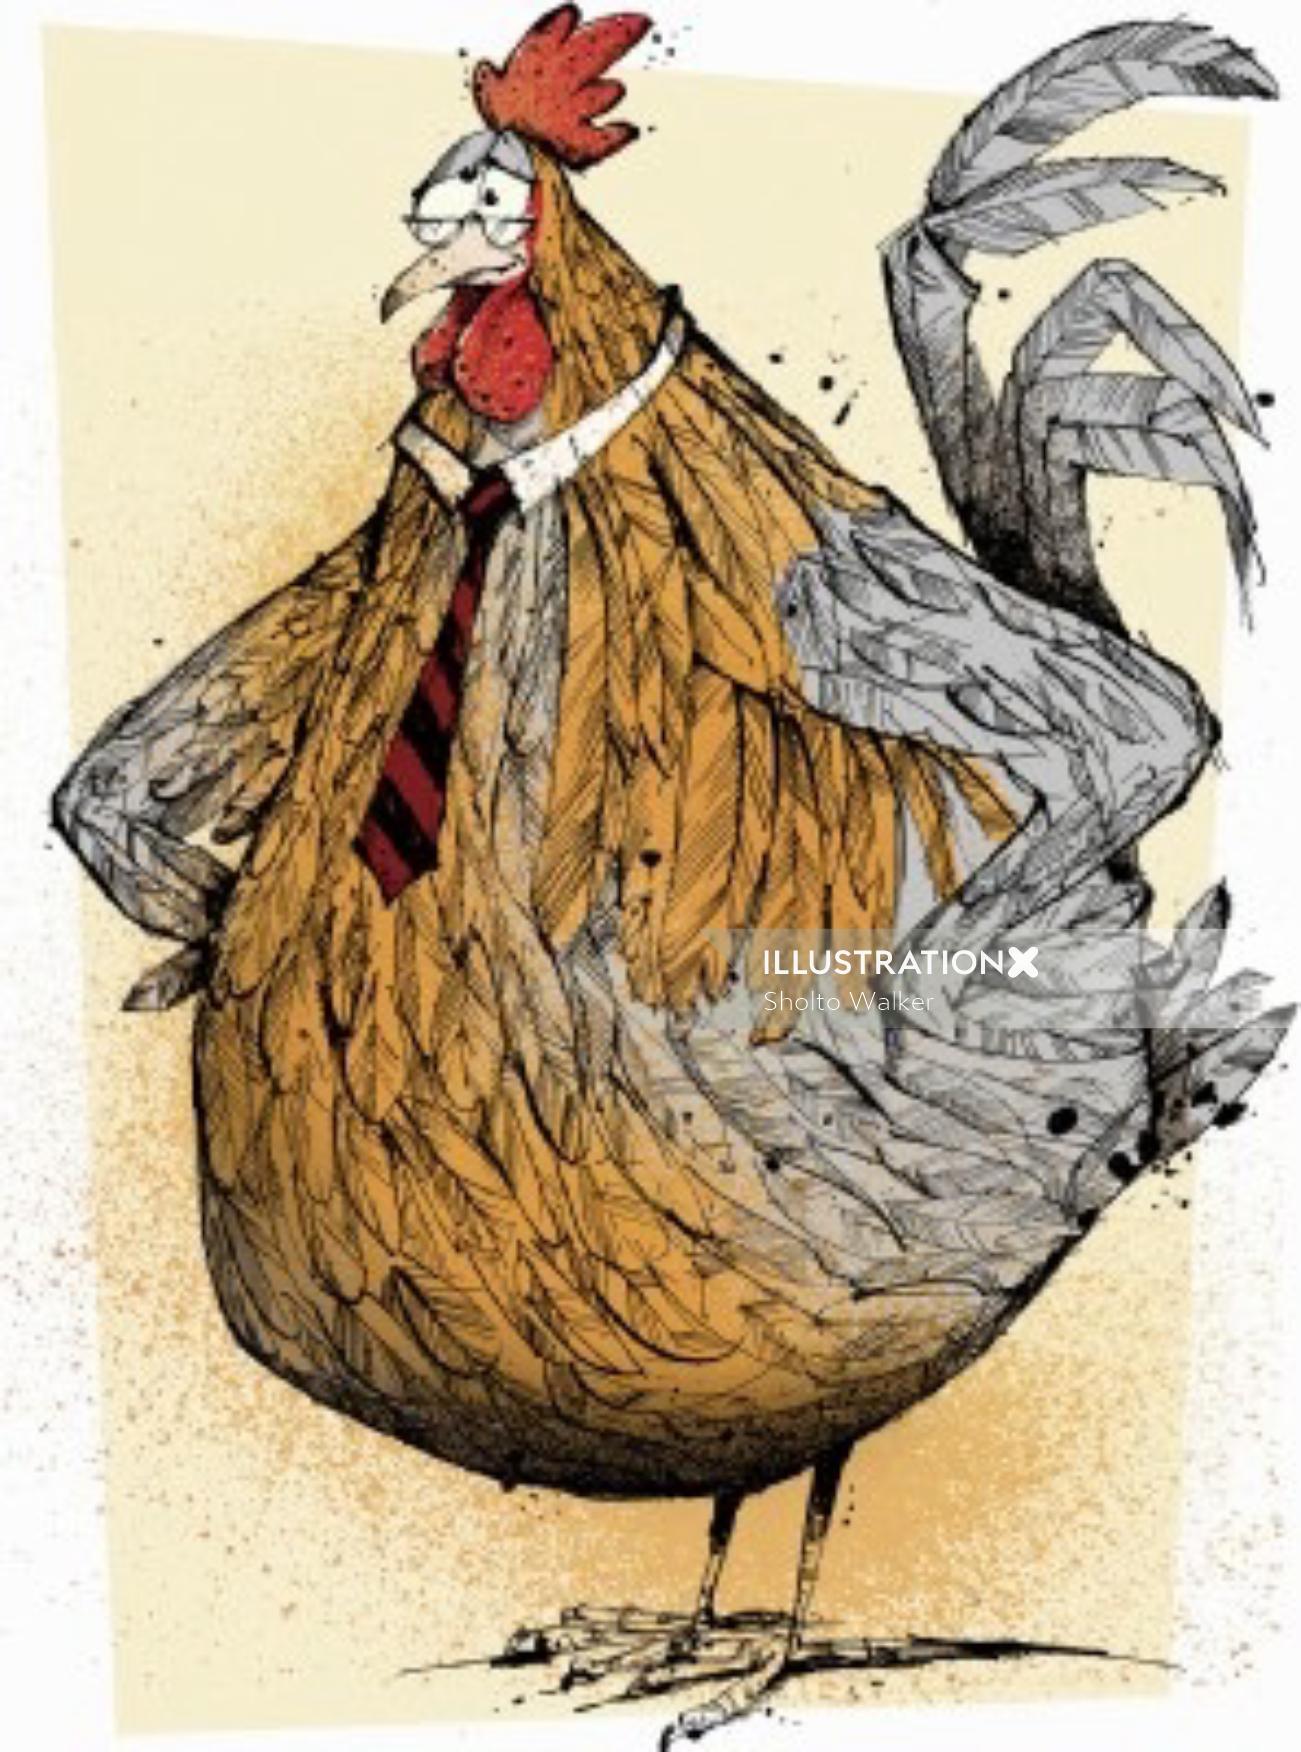 Cartoon cockerel illustration by Sholto Walker